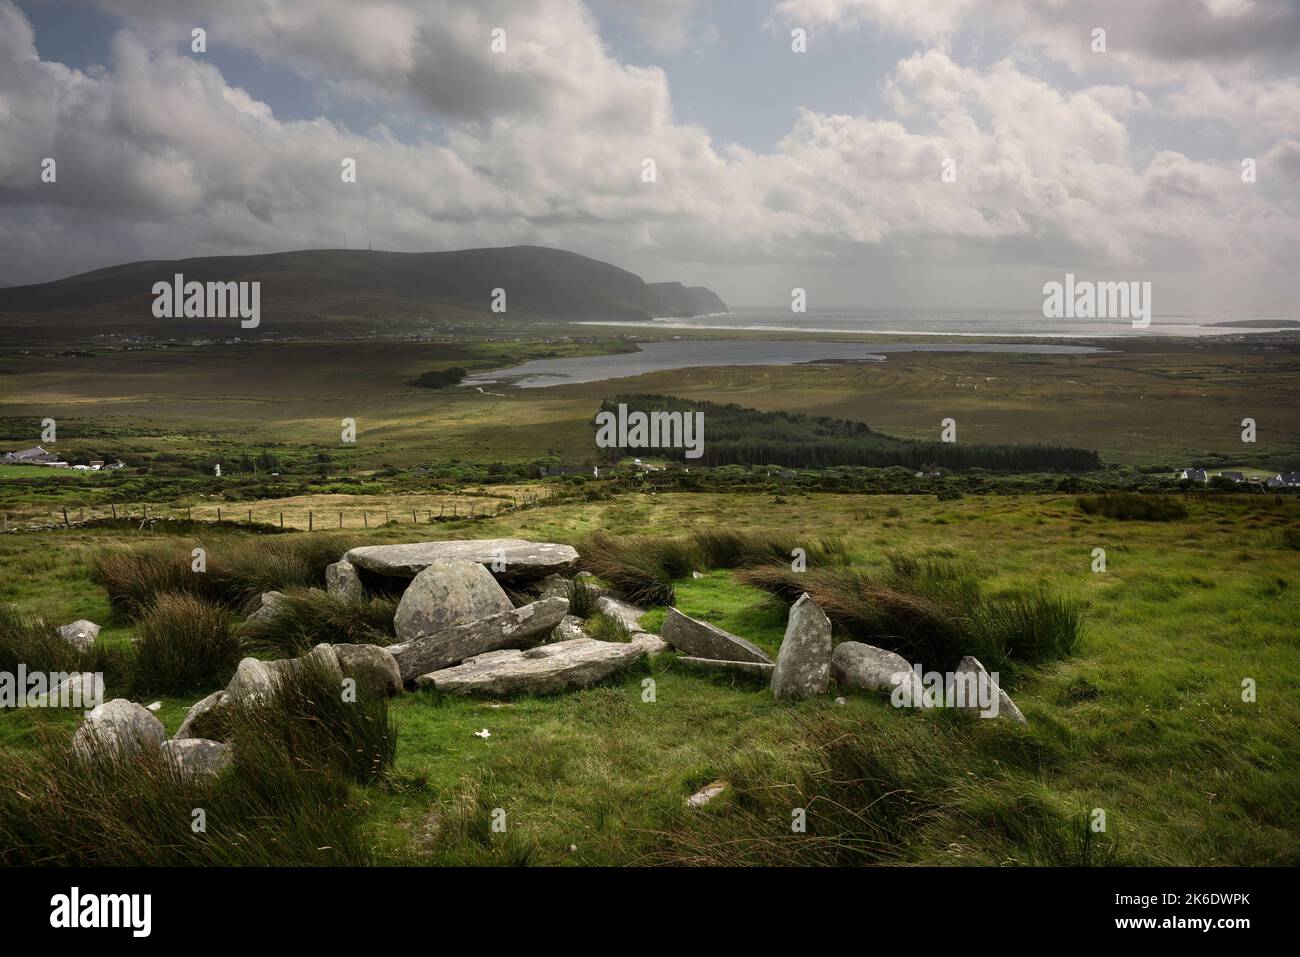 Wunderschöne Aussicht vom Megalithischen Grab am Hang des Slievemore Berges auf Achill Island in Irland. Stockfoto